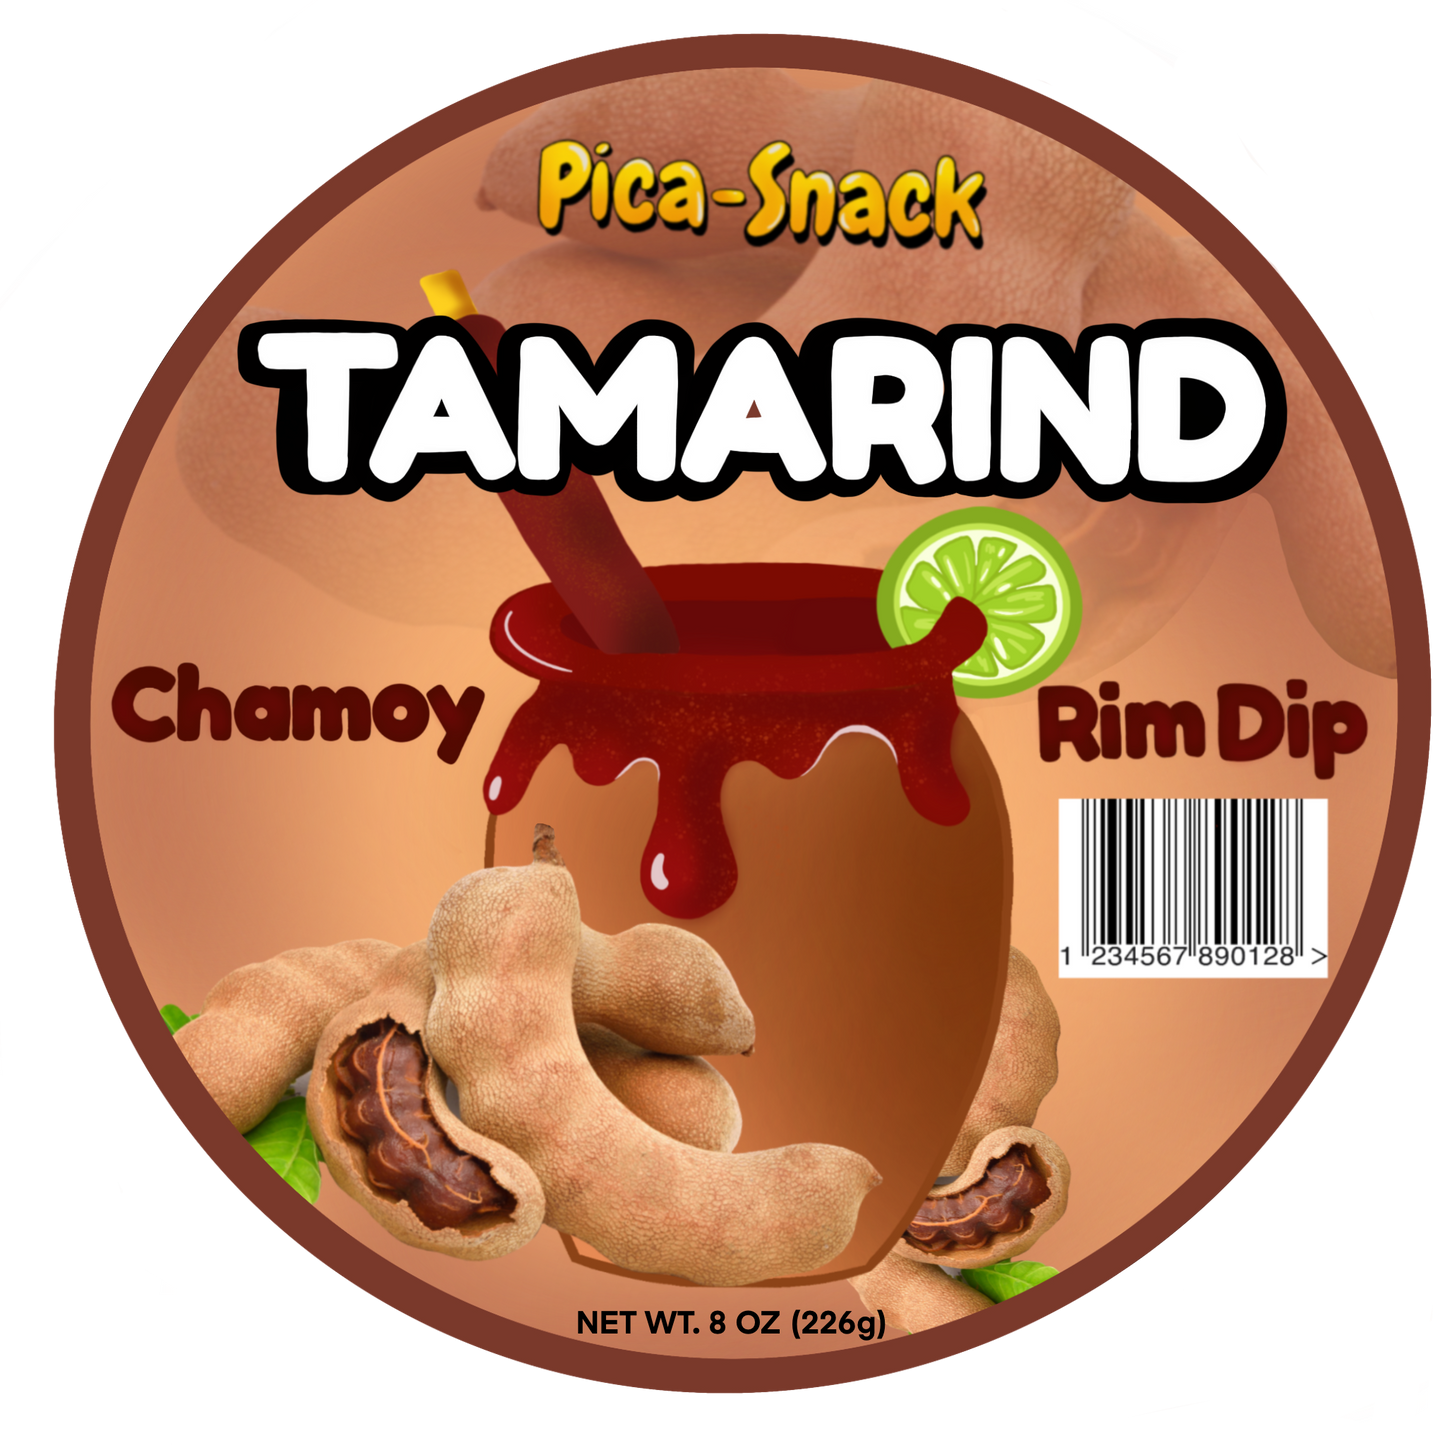 Tamarind Chamoy Rim Dip